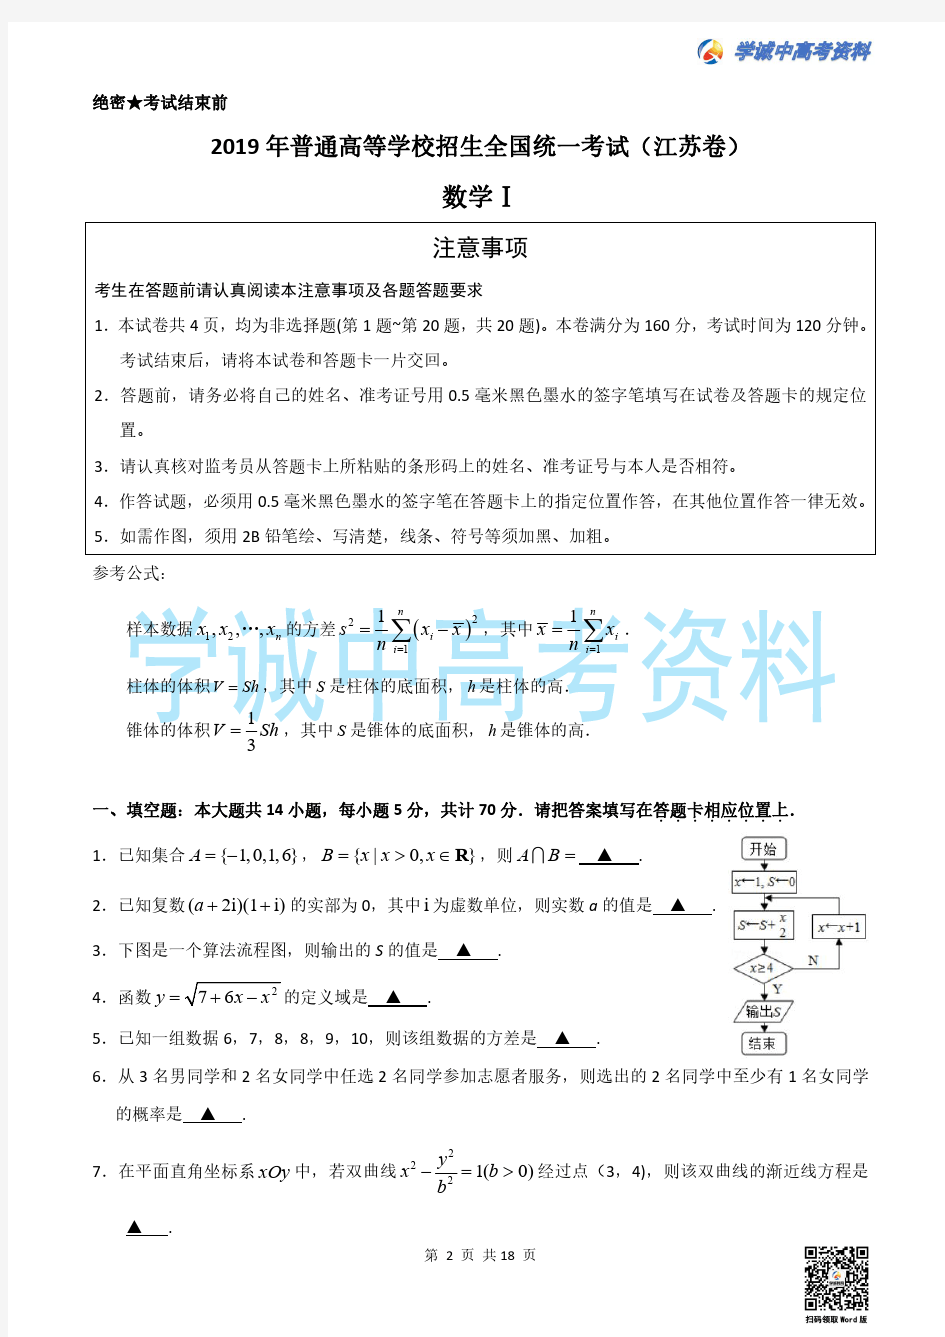 【真题】2019年江苏省高考数学试题(含附加题+答案)